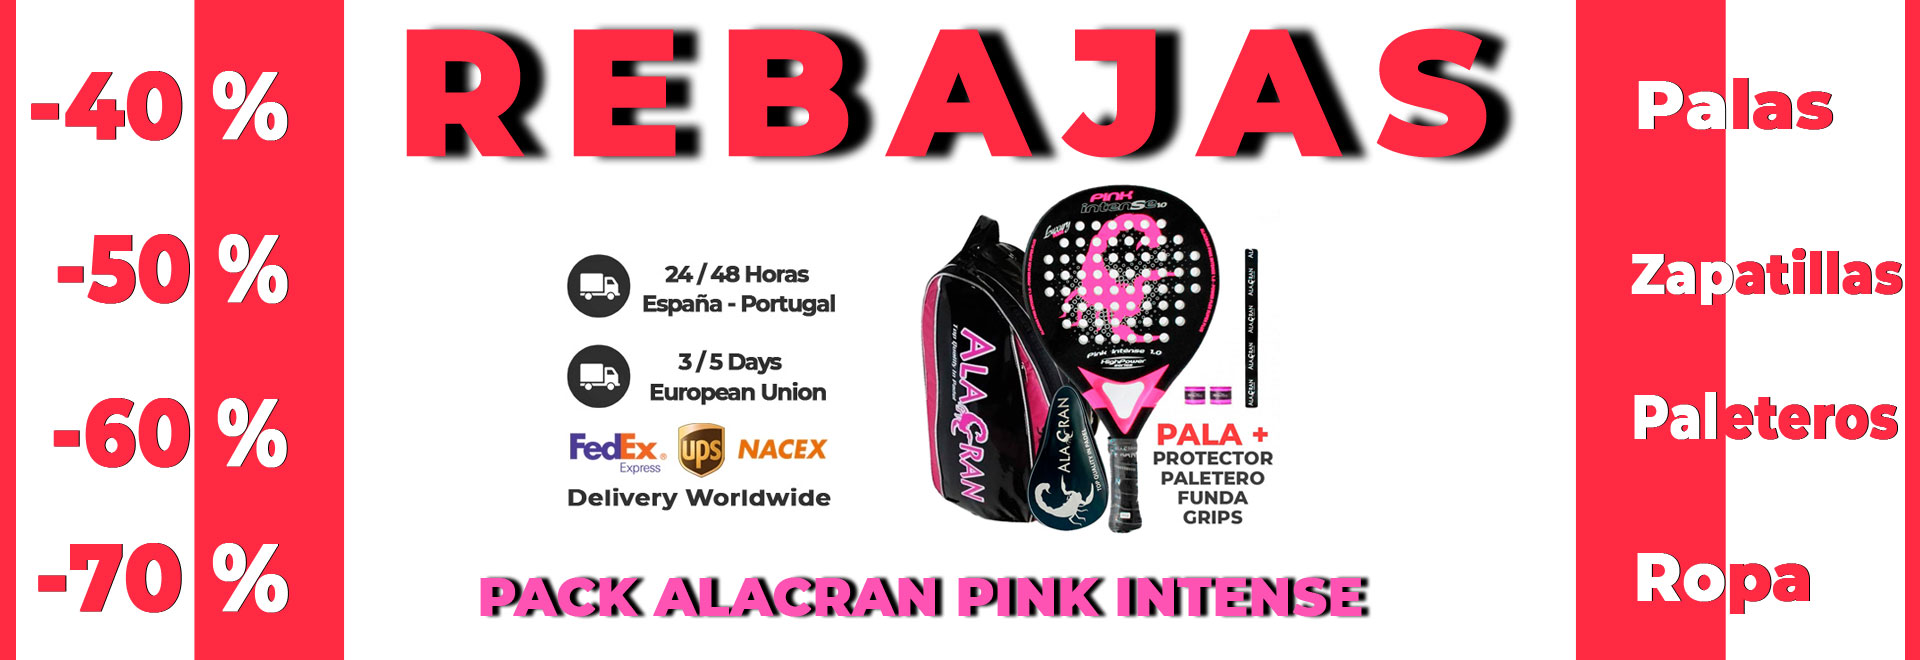 18 pack pink alacaran